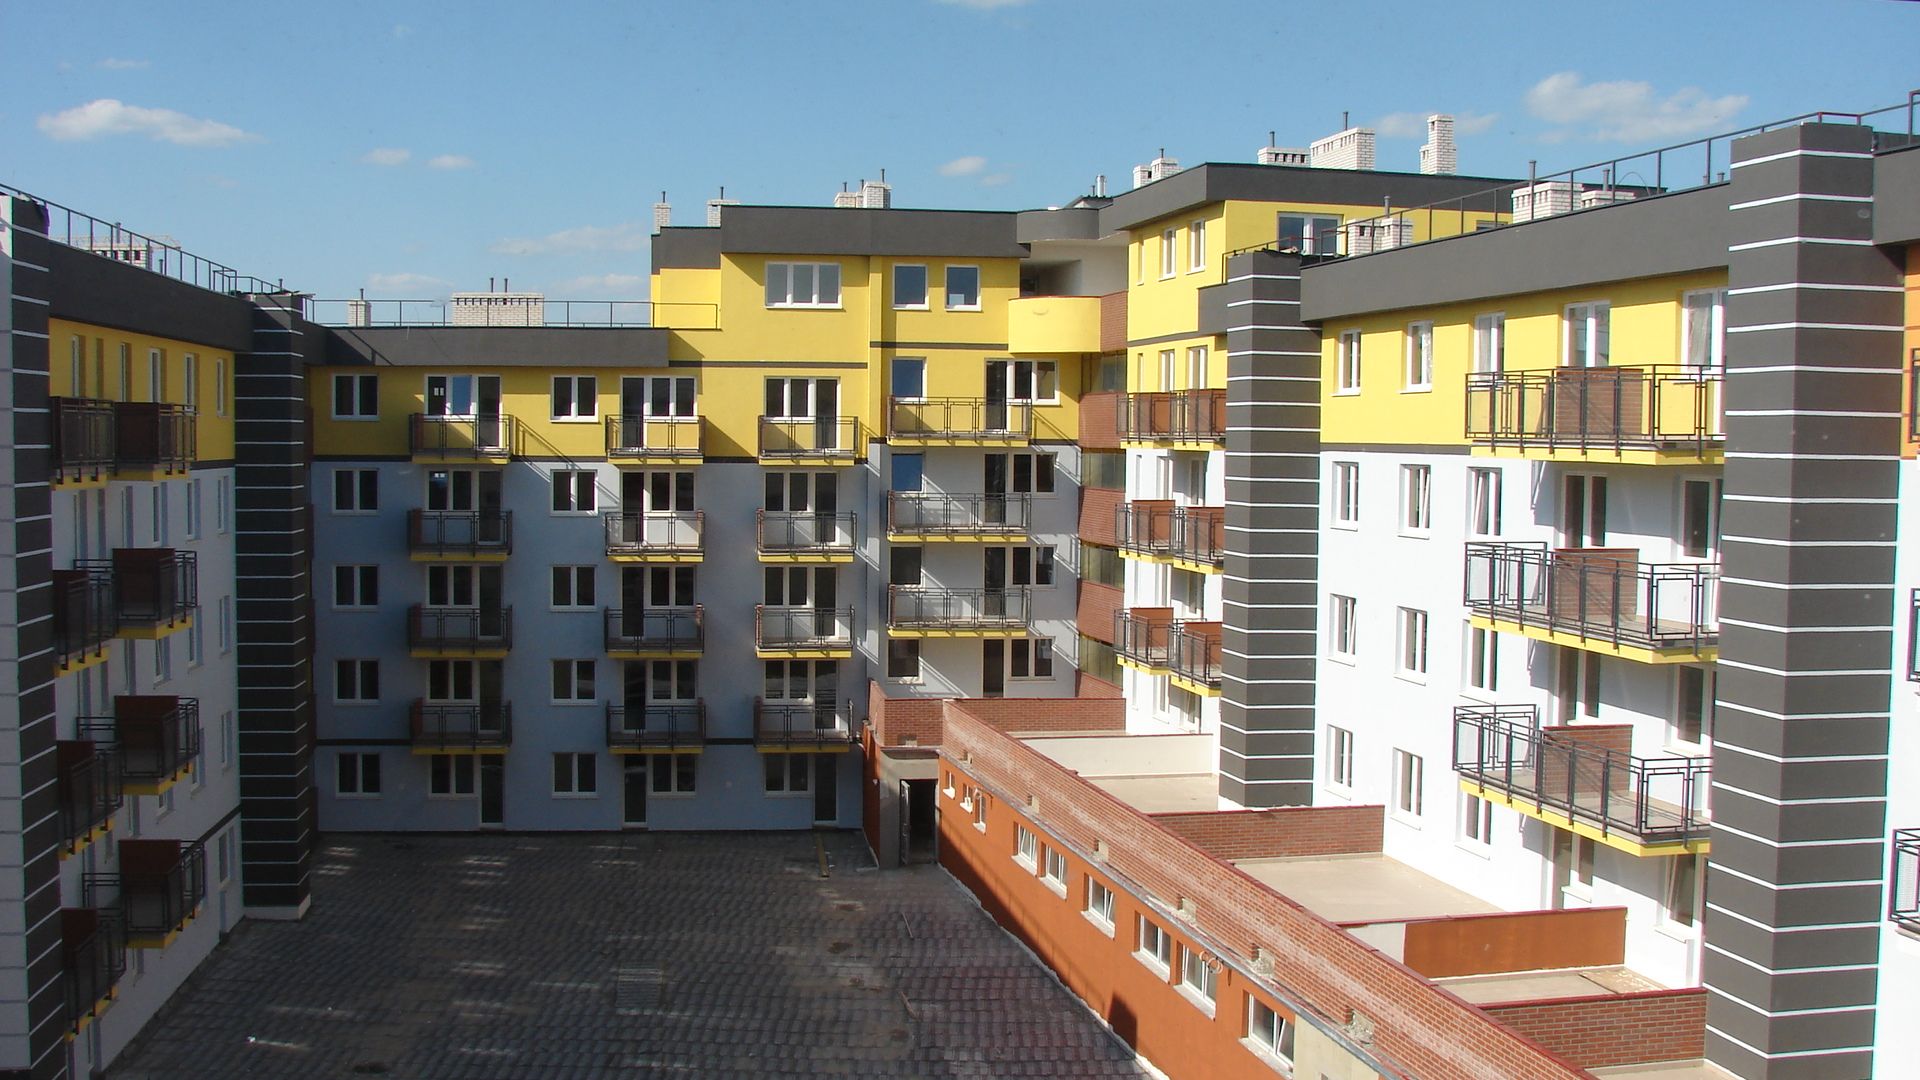  Analiza wtórnego rynku nieruchomości mieszkaniowych w regionach Polski &#8211; ranking cenowy